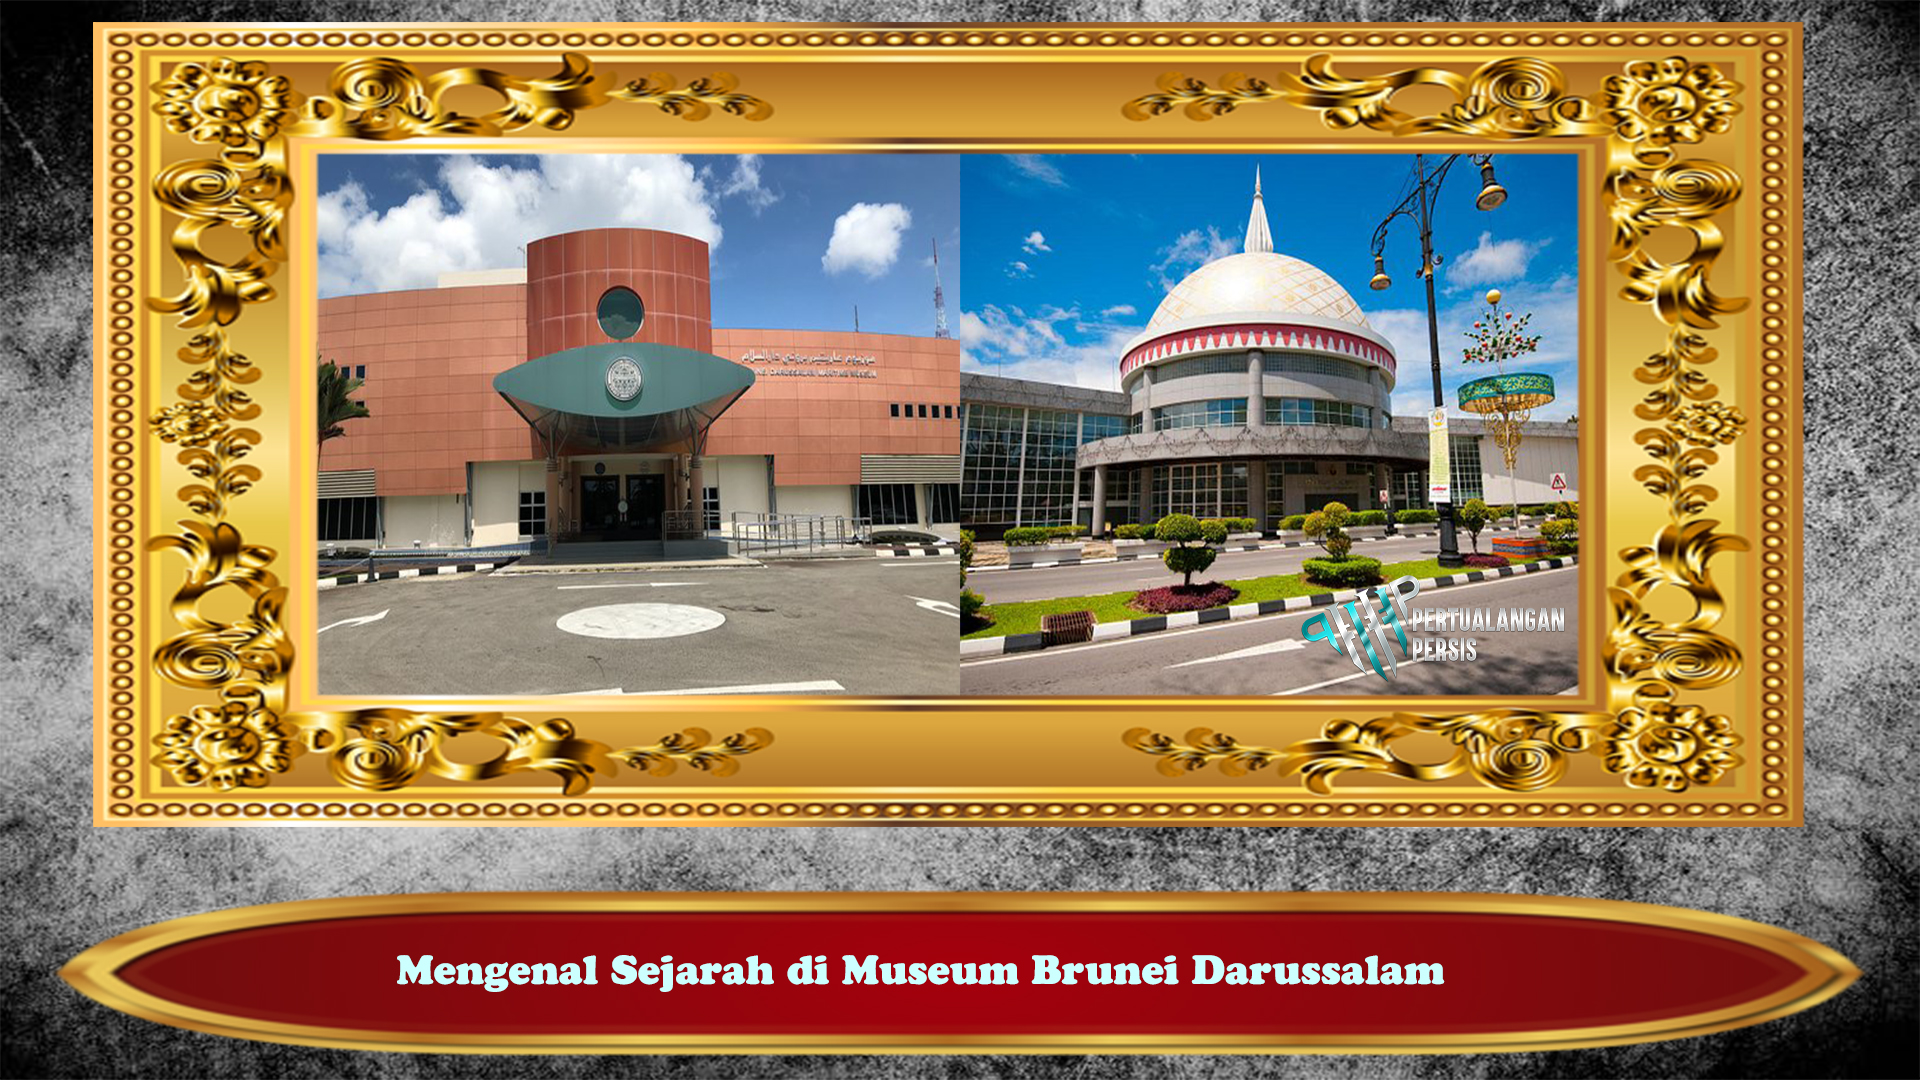 Mengenal Sejarah di Museum Brunei Darussalam